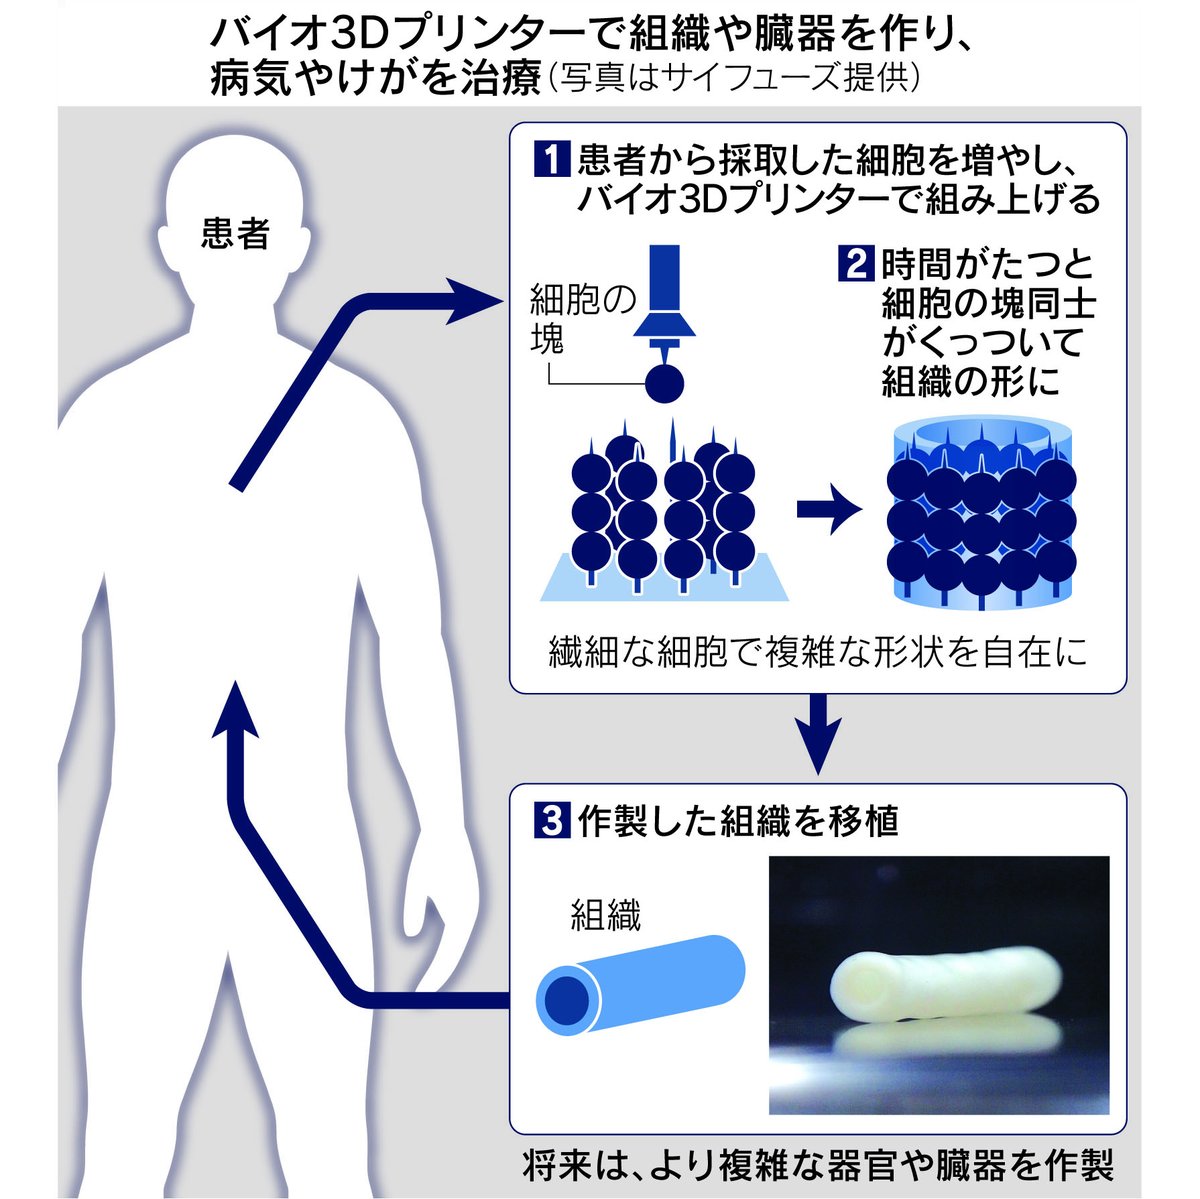 「バイオ3Dプリンター」で指の神経を治療。京都大学が成功しました。
nikkei.com/article/DGXZQO…

患者から採取した細胞を培養し、3Dプリンターで積み上げ。組織を移植して神経を再生します。様々な治療に応用できる可能性があります。